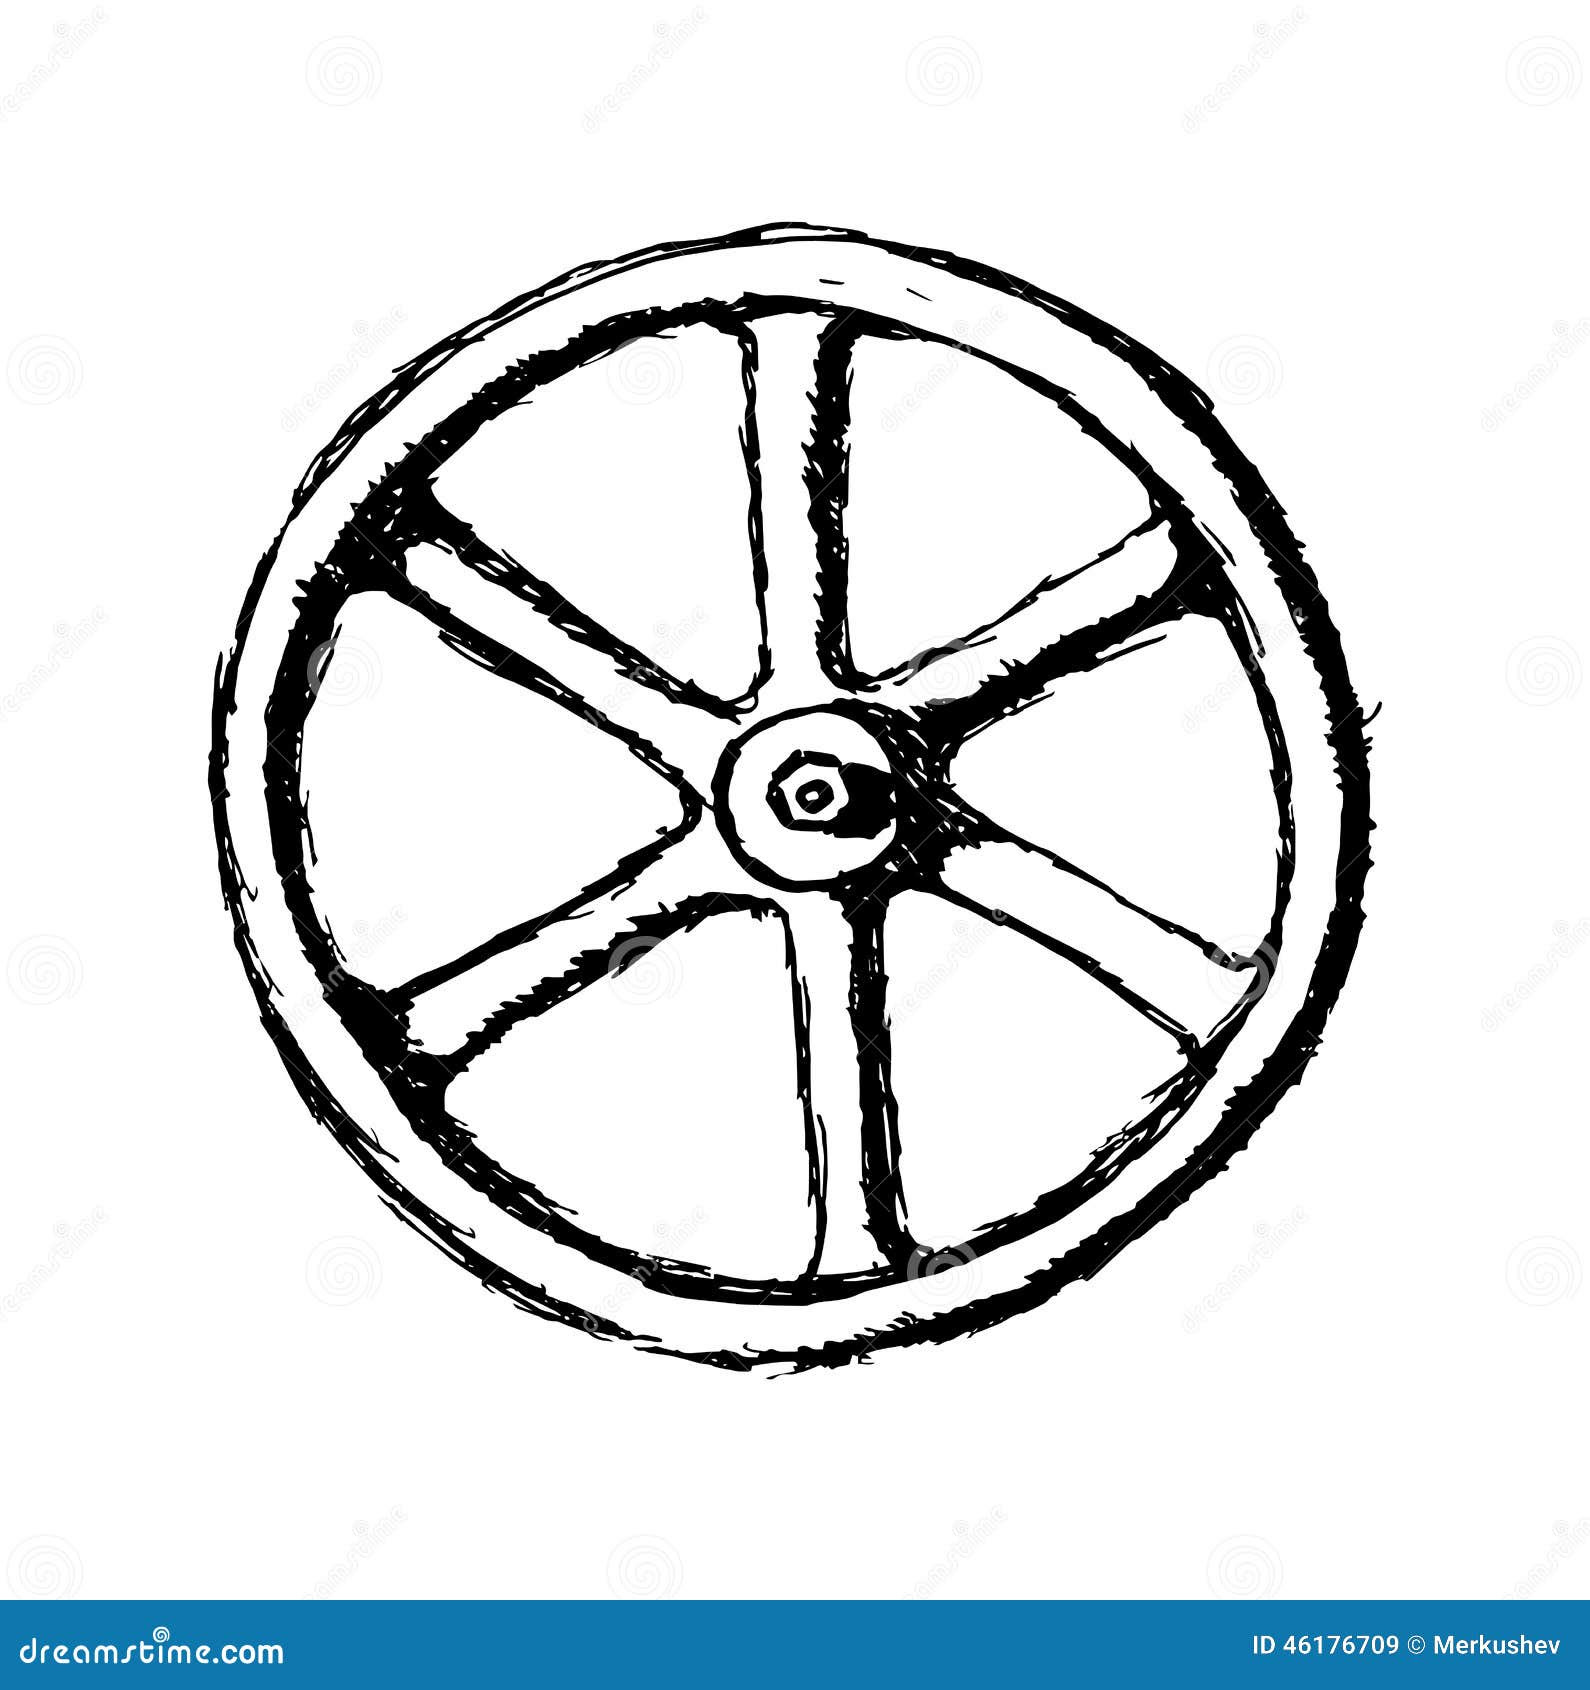 Схематическое изображение колеса